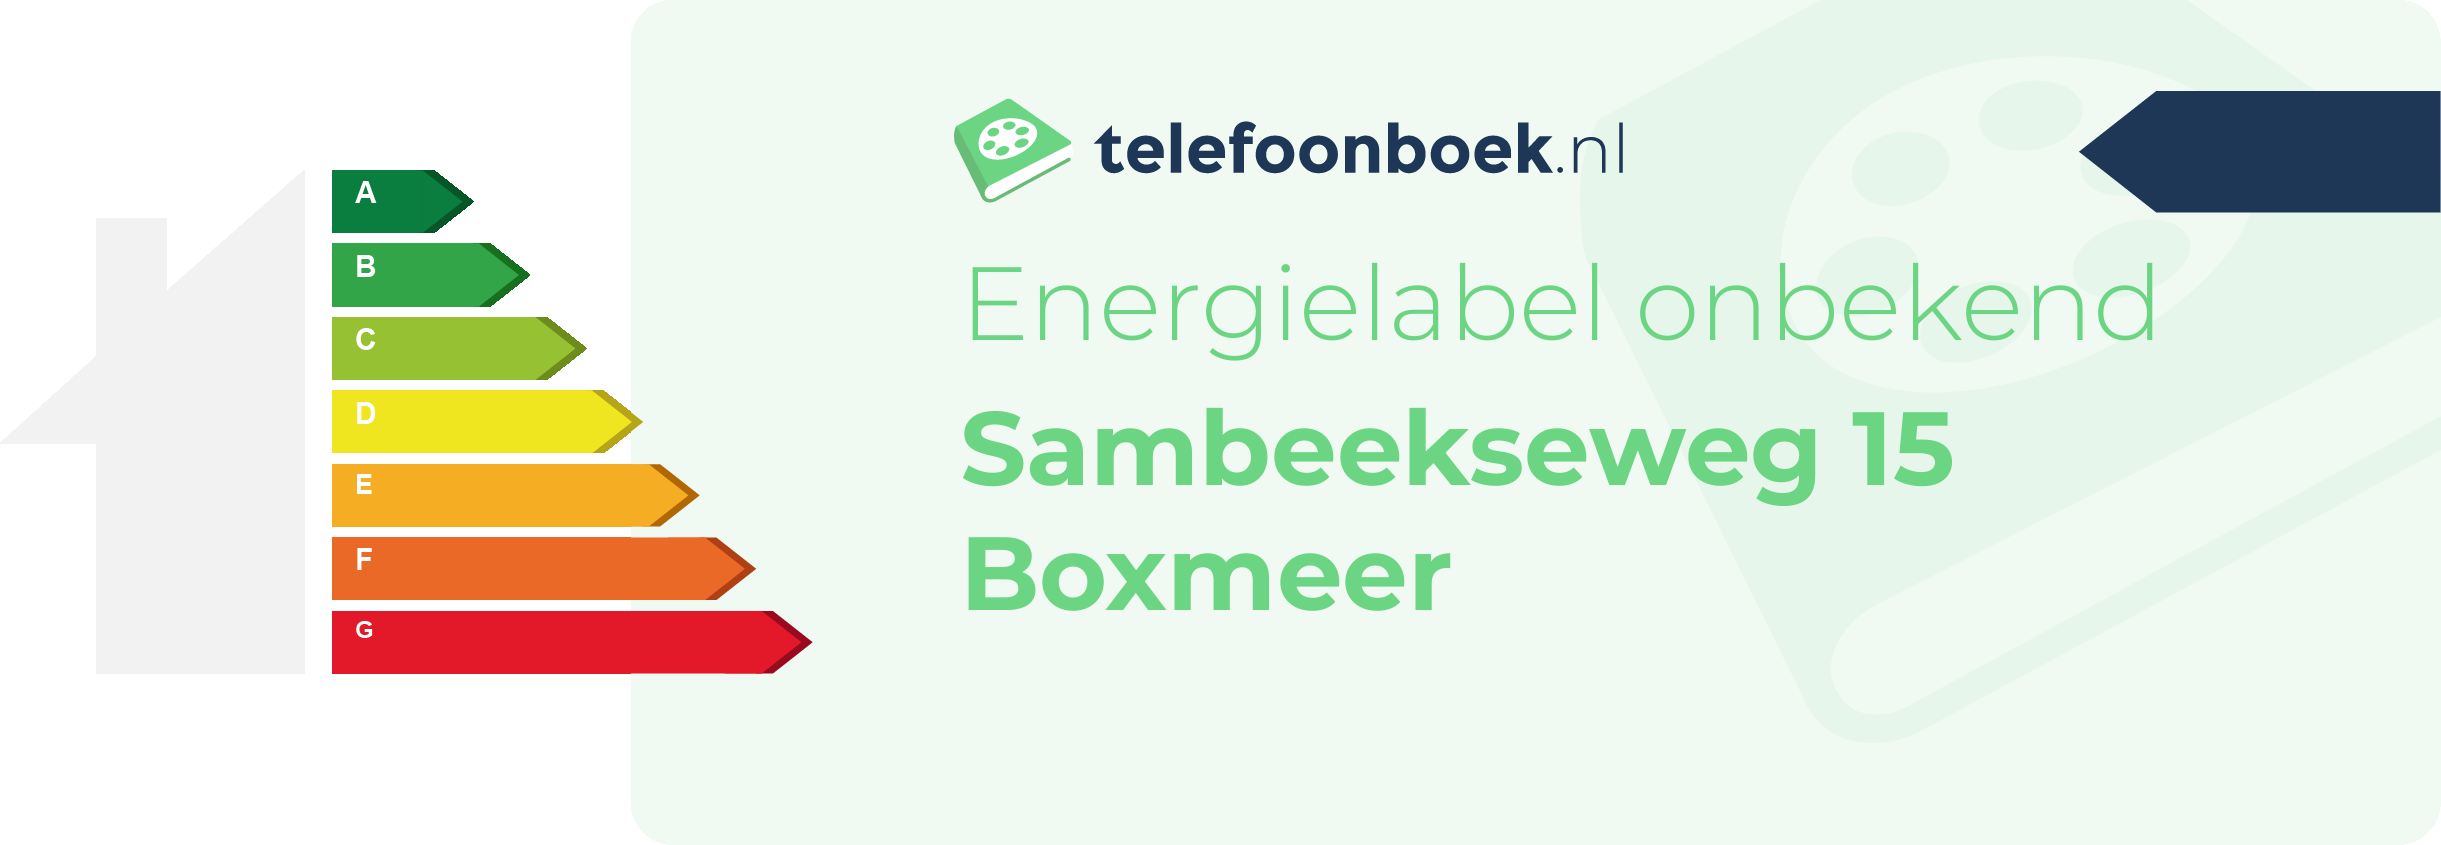 Energielabel Sambeekseweg 15 Boxmeer